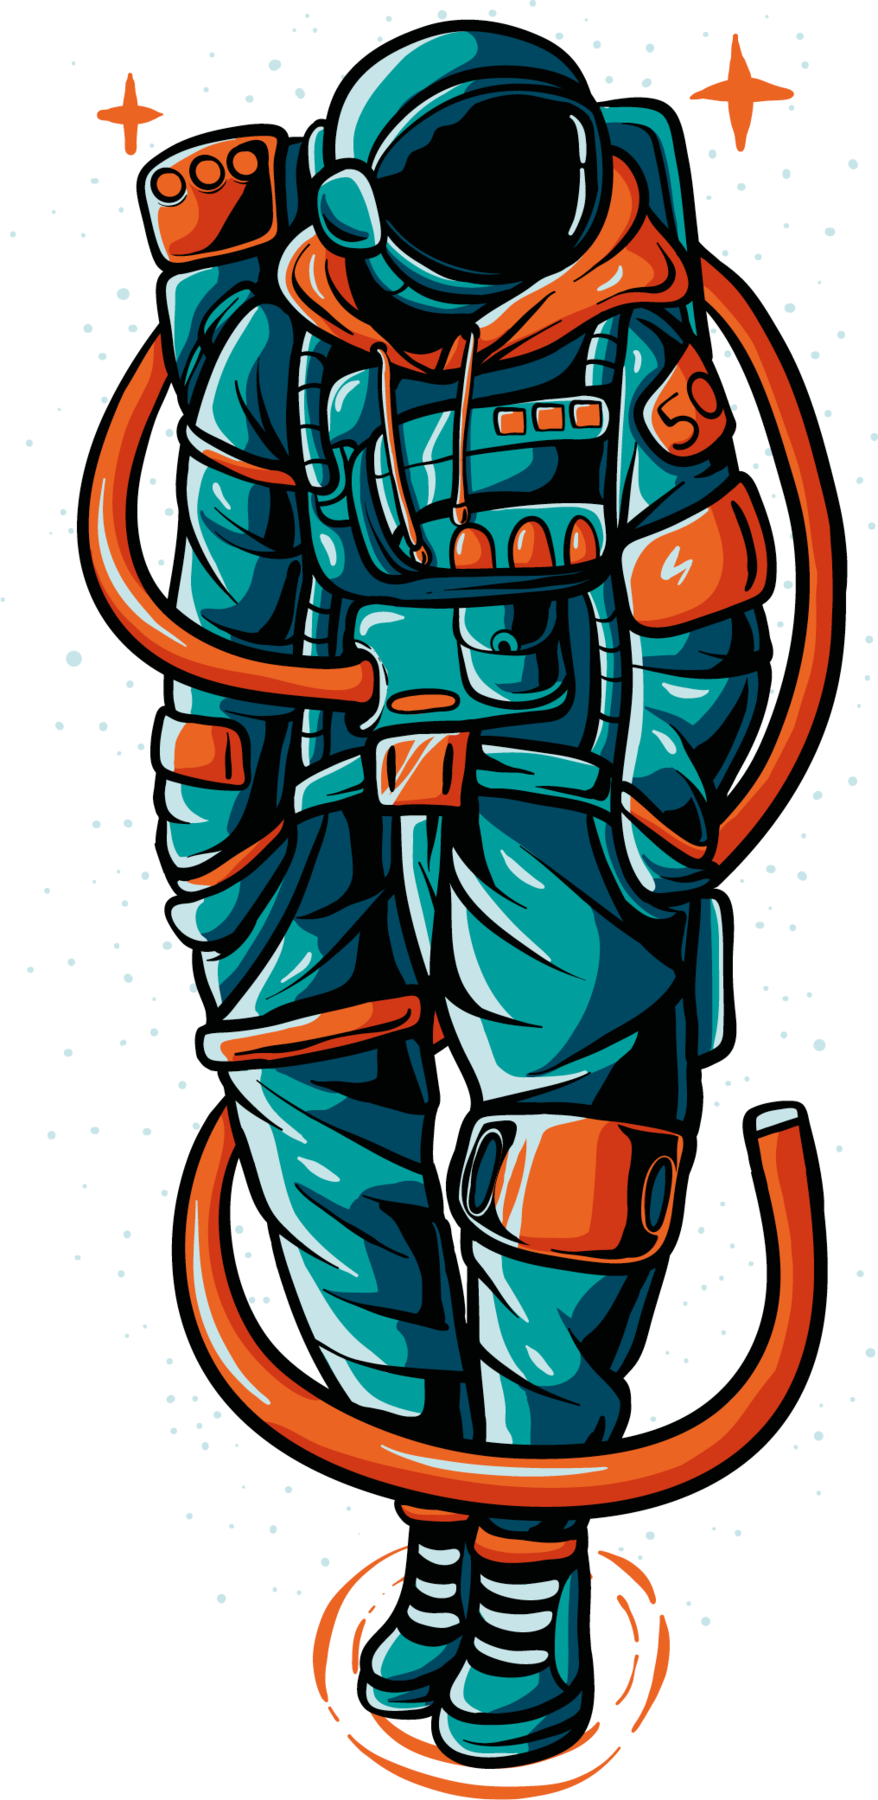 Ilustração. Um homem em pé, com roupa de astronauta em azul, com capacete em azul, vidro preto na frente, com detalhes em laranja e tubulações da mesma cor. Ele está calçado com par de tênis em azul. Na parte superior, duas estrelas na cor laranja, uma à esquerda e outra à direita.